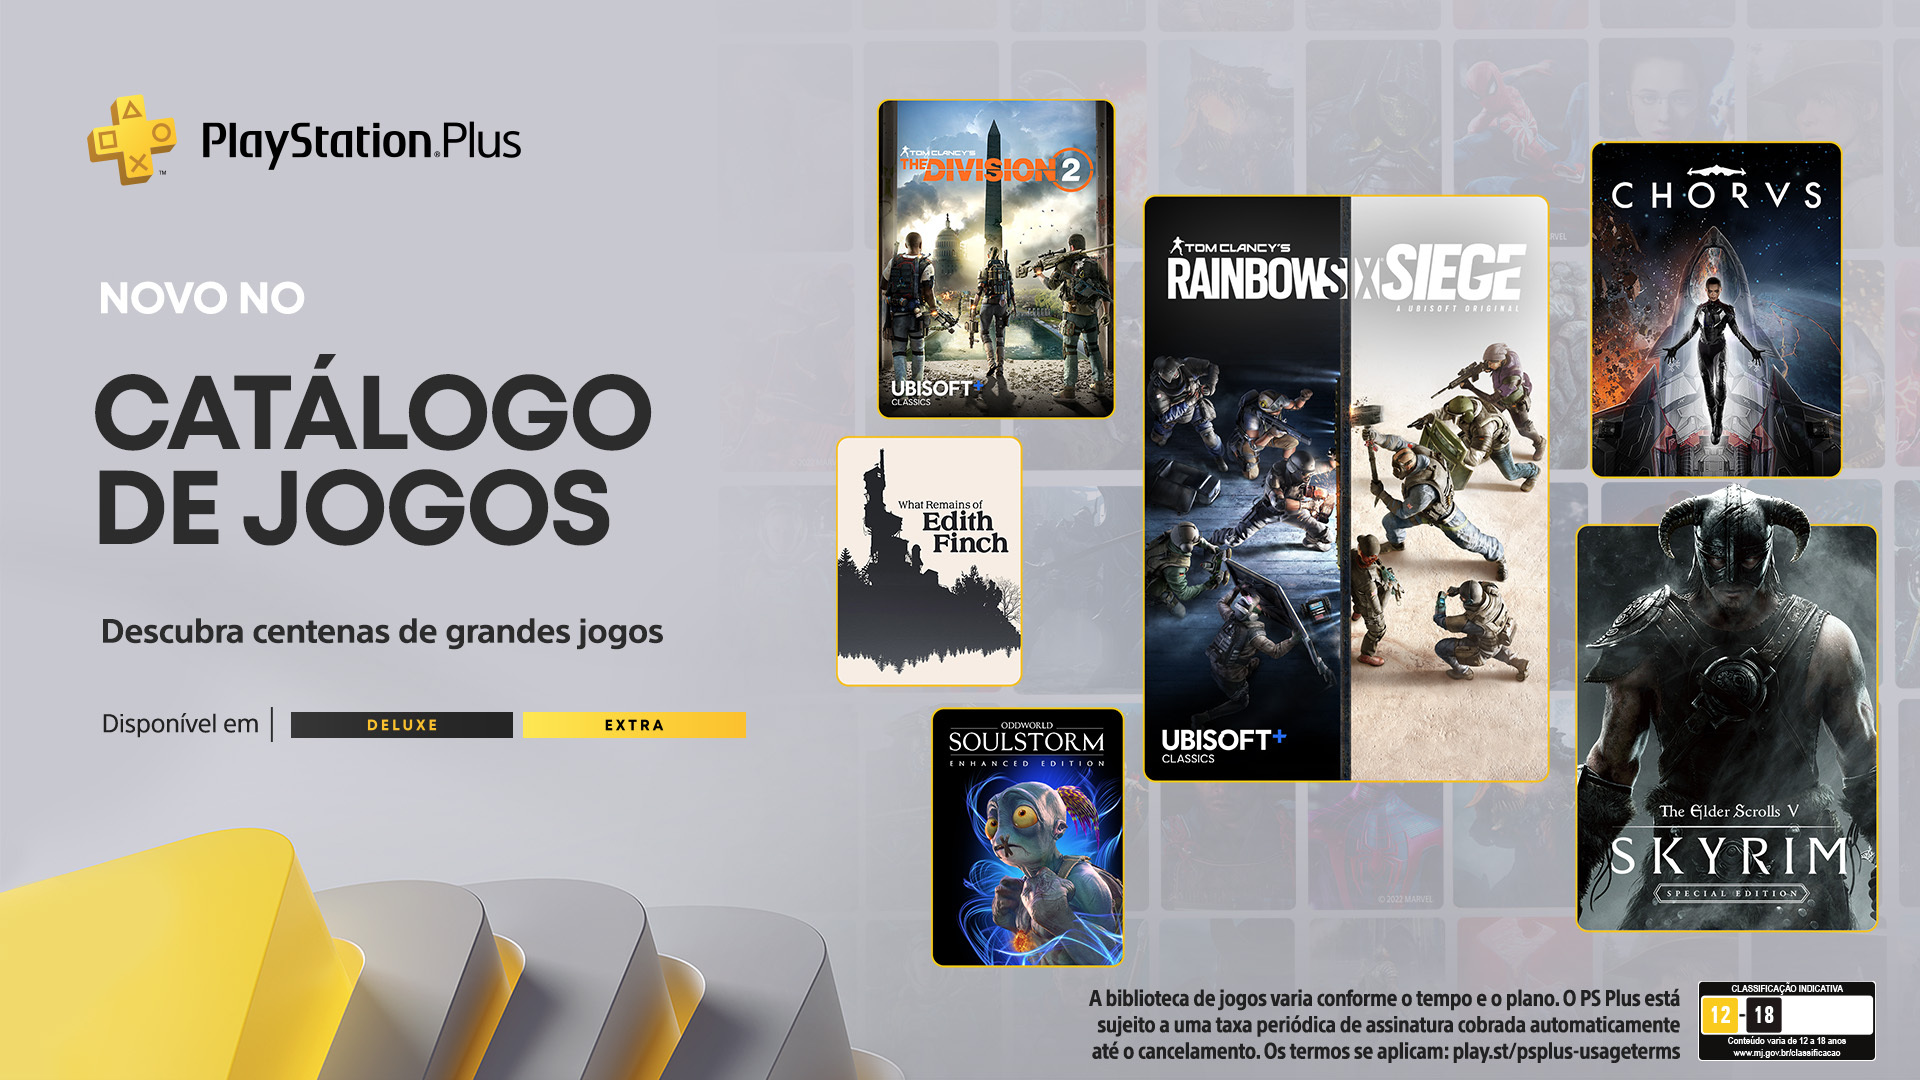 PS4 e PS5: relembre os melhores jogos da PS Plus